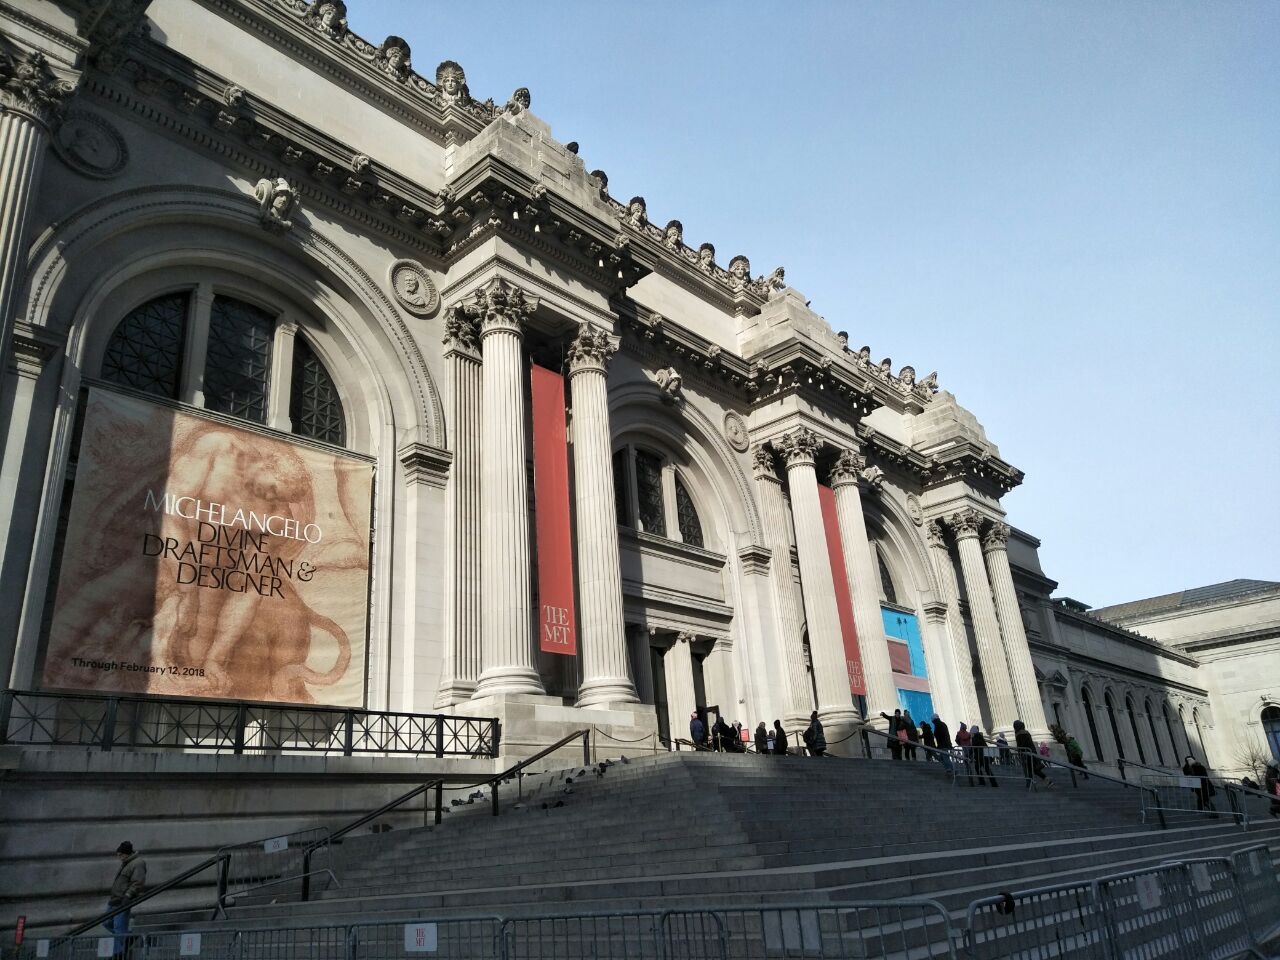 【携程攻略】大都会艺术博物馆门票,纽约大都会艺术博物馆攻略/地址/图片/门票价格